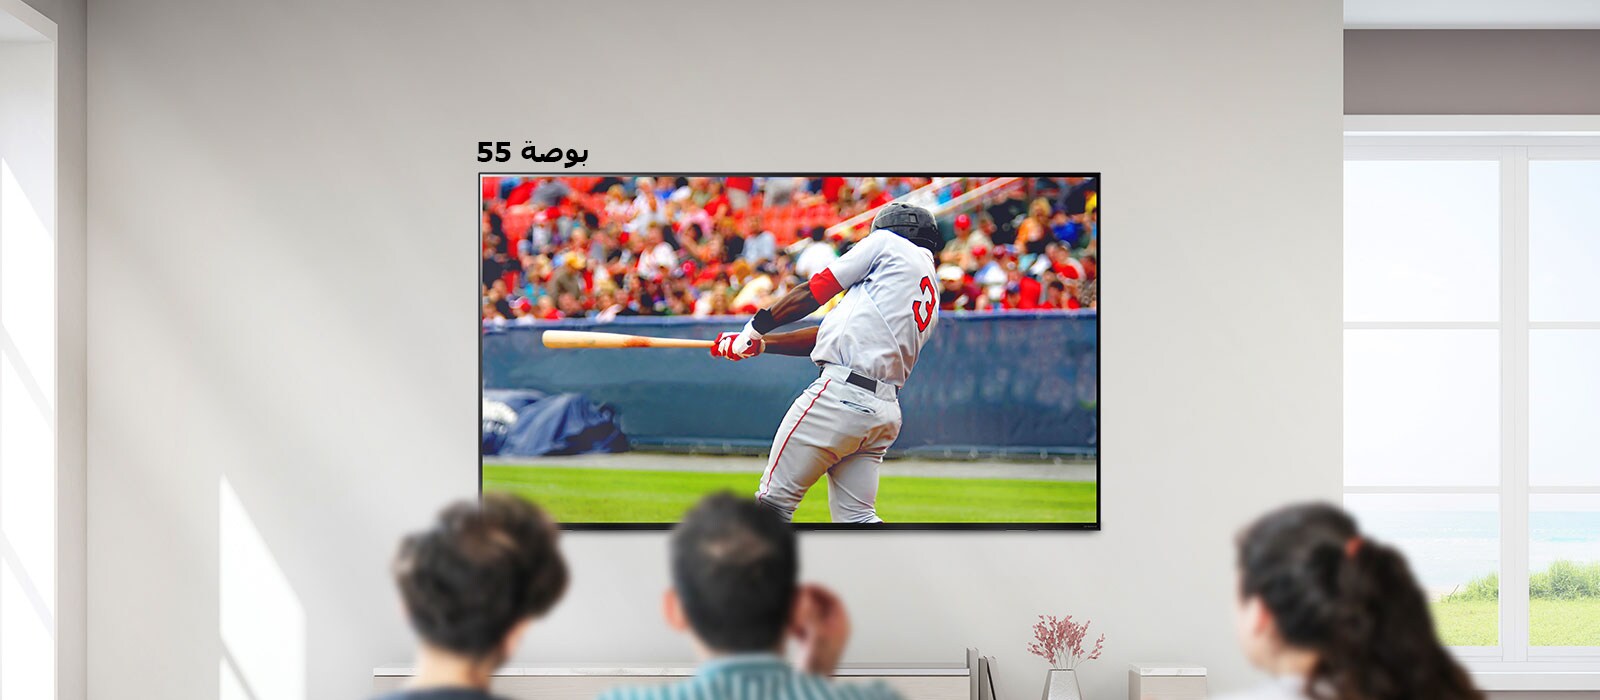 صورة قابلة للتمرير لثلاثة أشخاص يشاهدون لعبة البيسبول على تلفاز كبير مثبت على الحائط.  أثناء التمرير من اليسار إلى اليمين، تكبر الشاشة. 